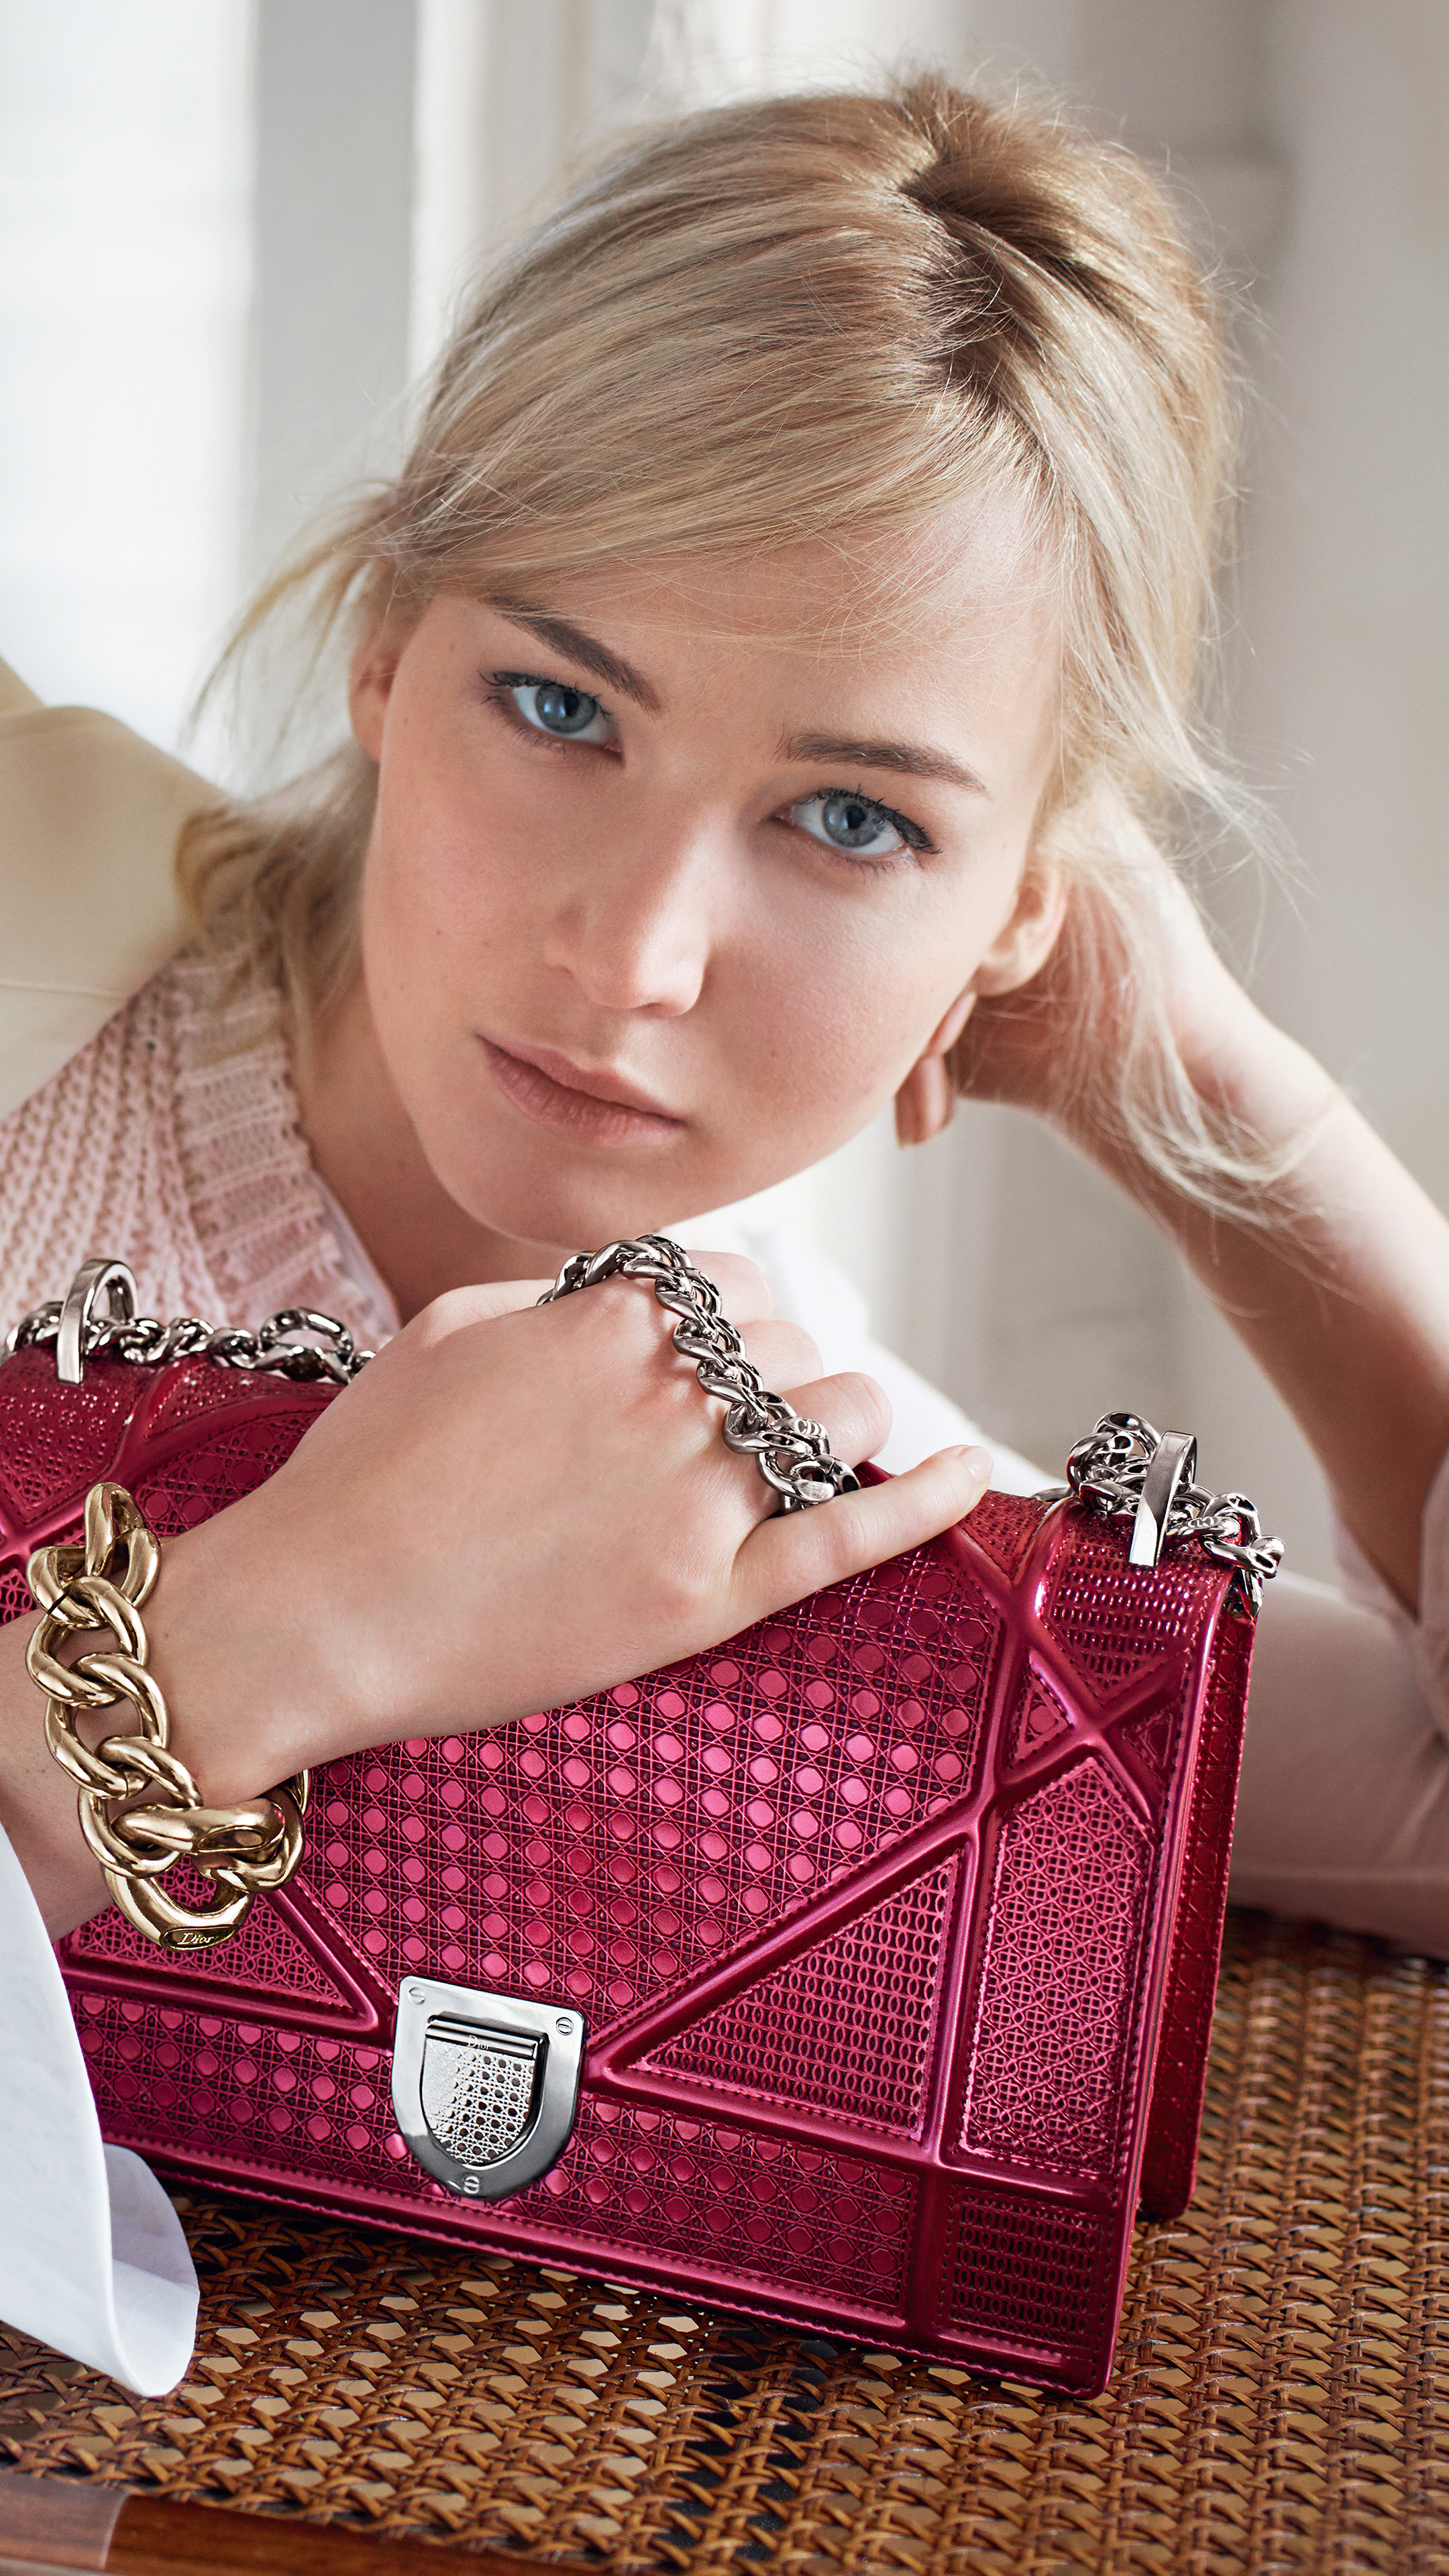 Dior: Jennifer Lawrence, Spring-summer 2016 handbag campaign. 2160x3840 4K Background.